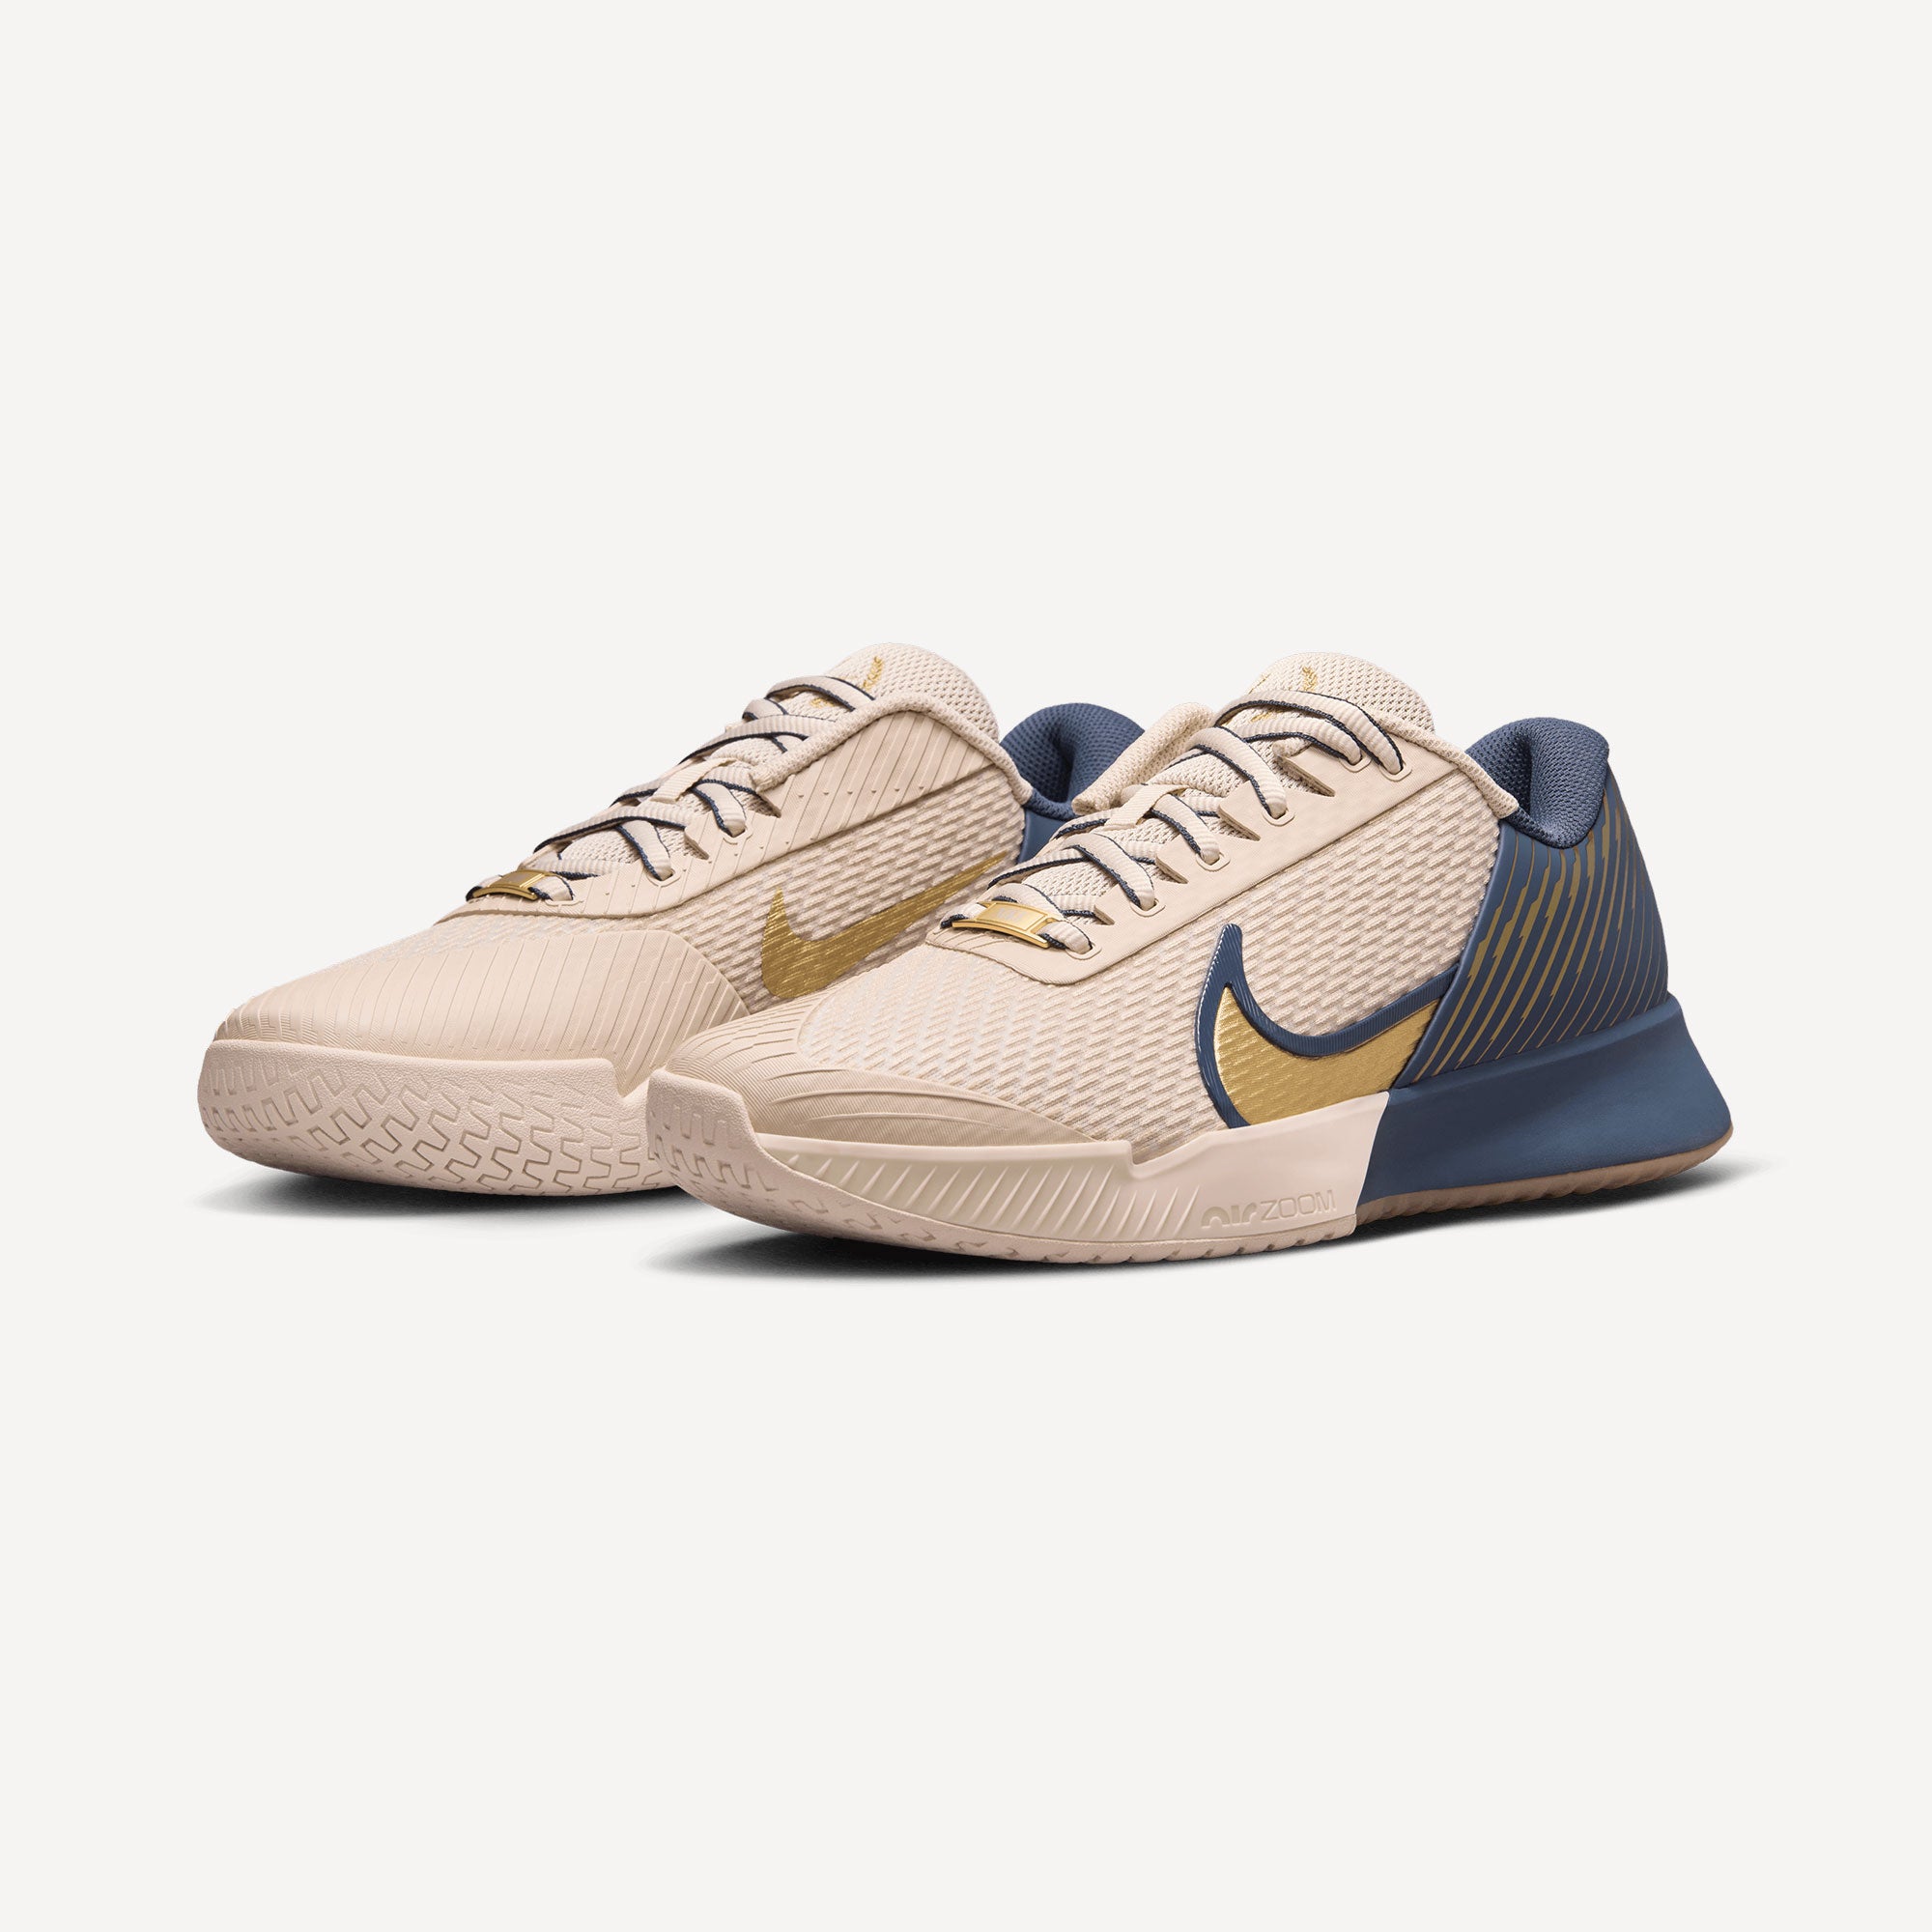 NikeCourt Air Zoom Vapor Pro 2 Premium Men's Clay Court Tennis Shoes - Sand (4)